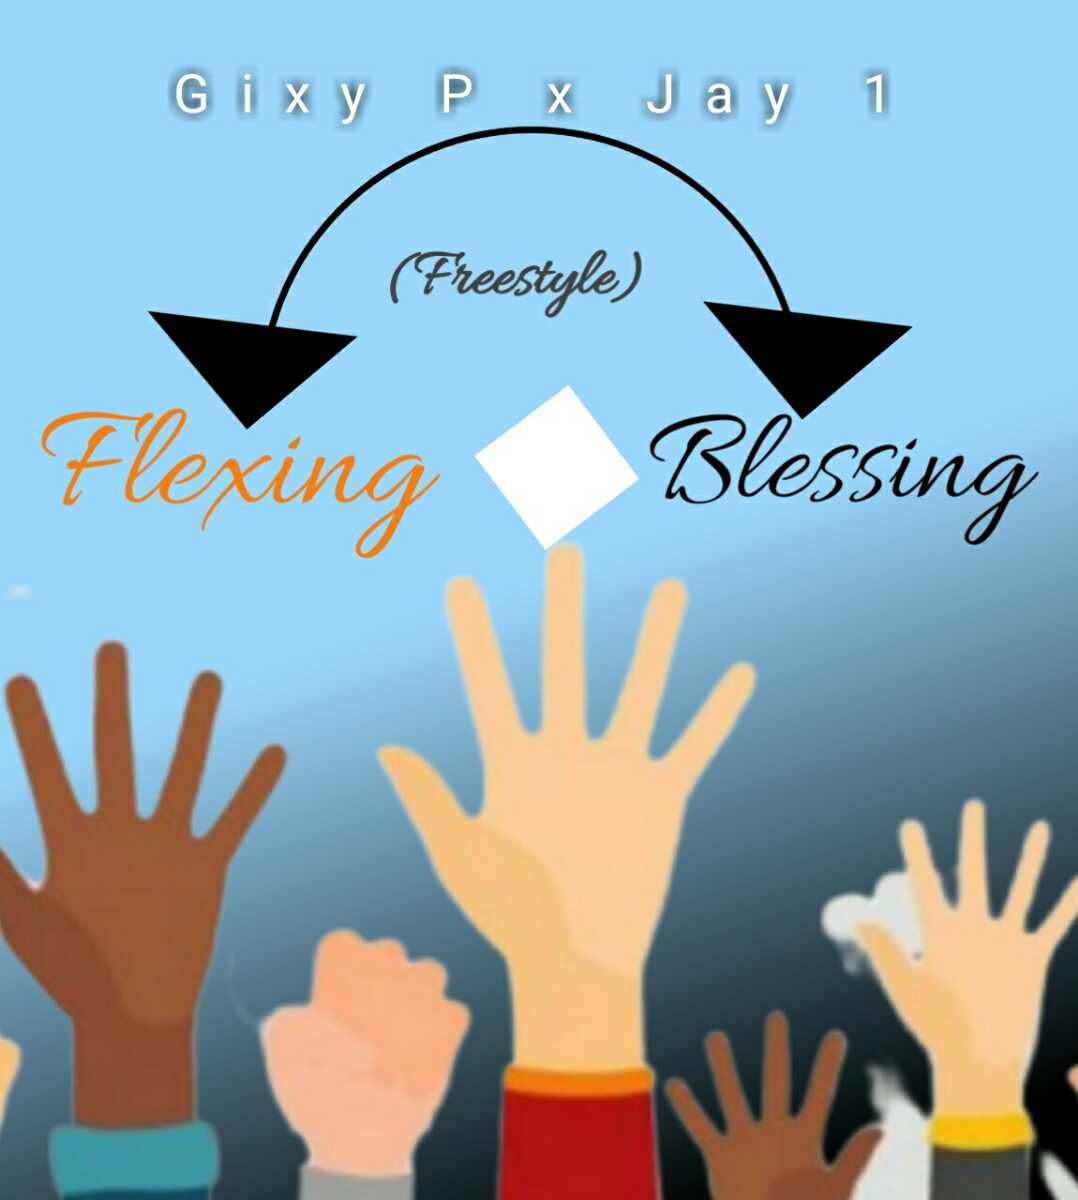 Flexing & Blessing